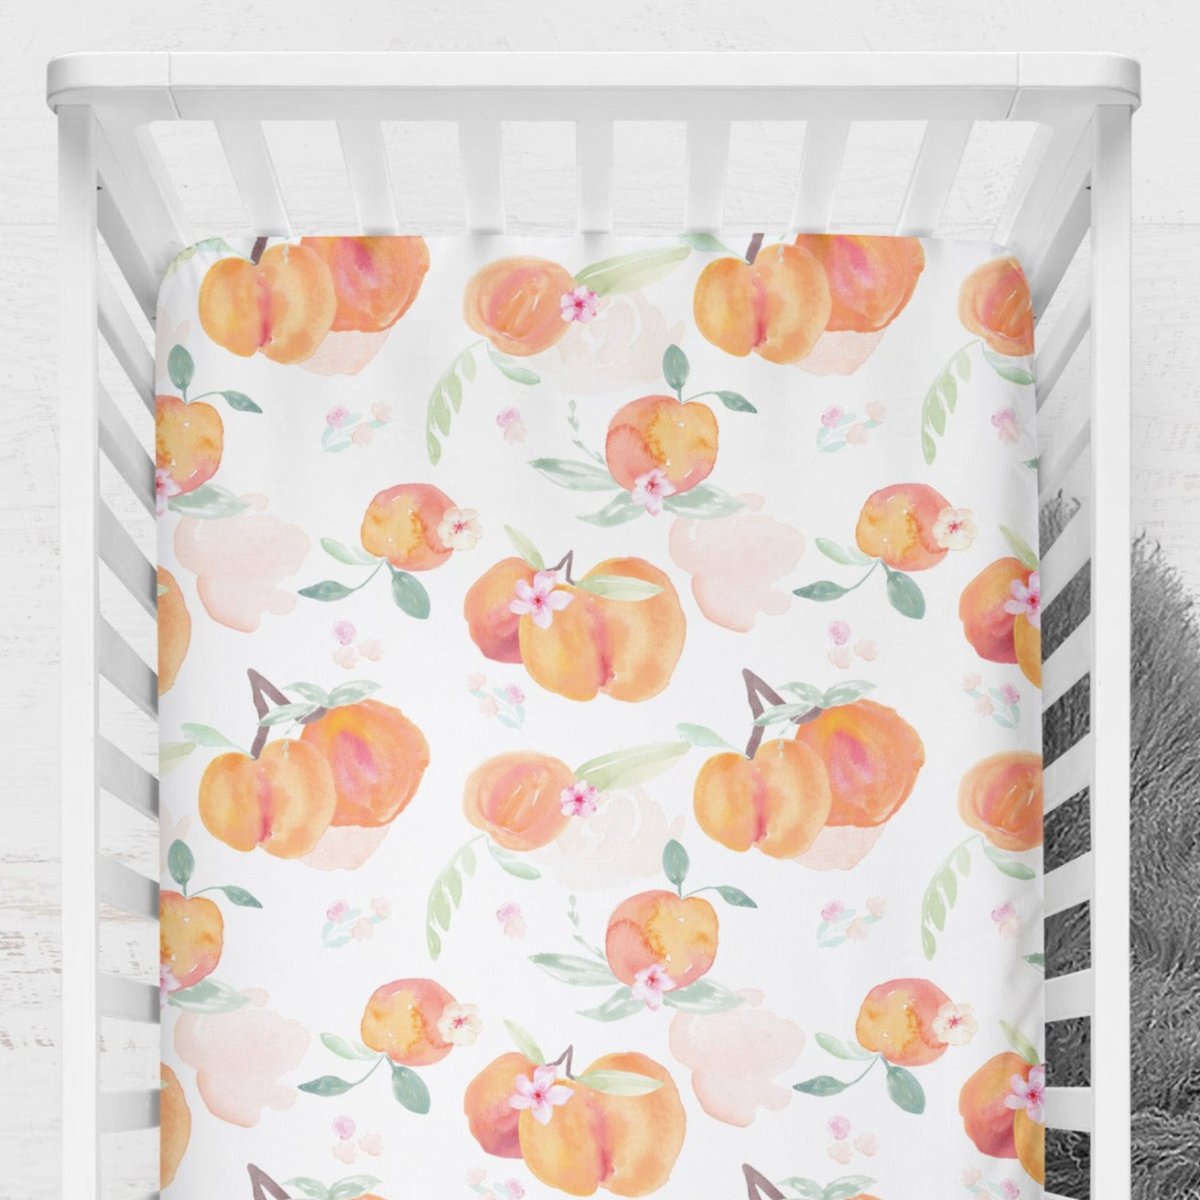 Sweet Georgia Peach Crib Sheet - gender_girl, Theme_Floral,